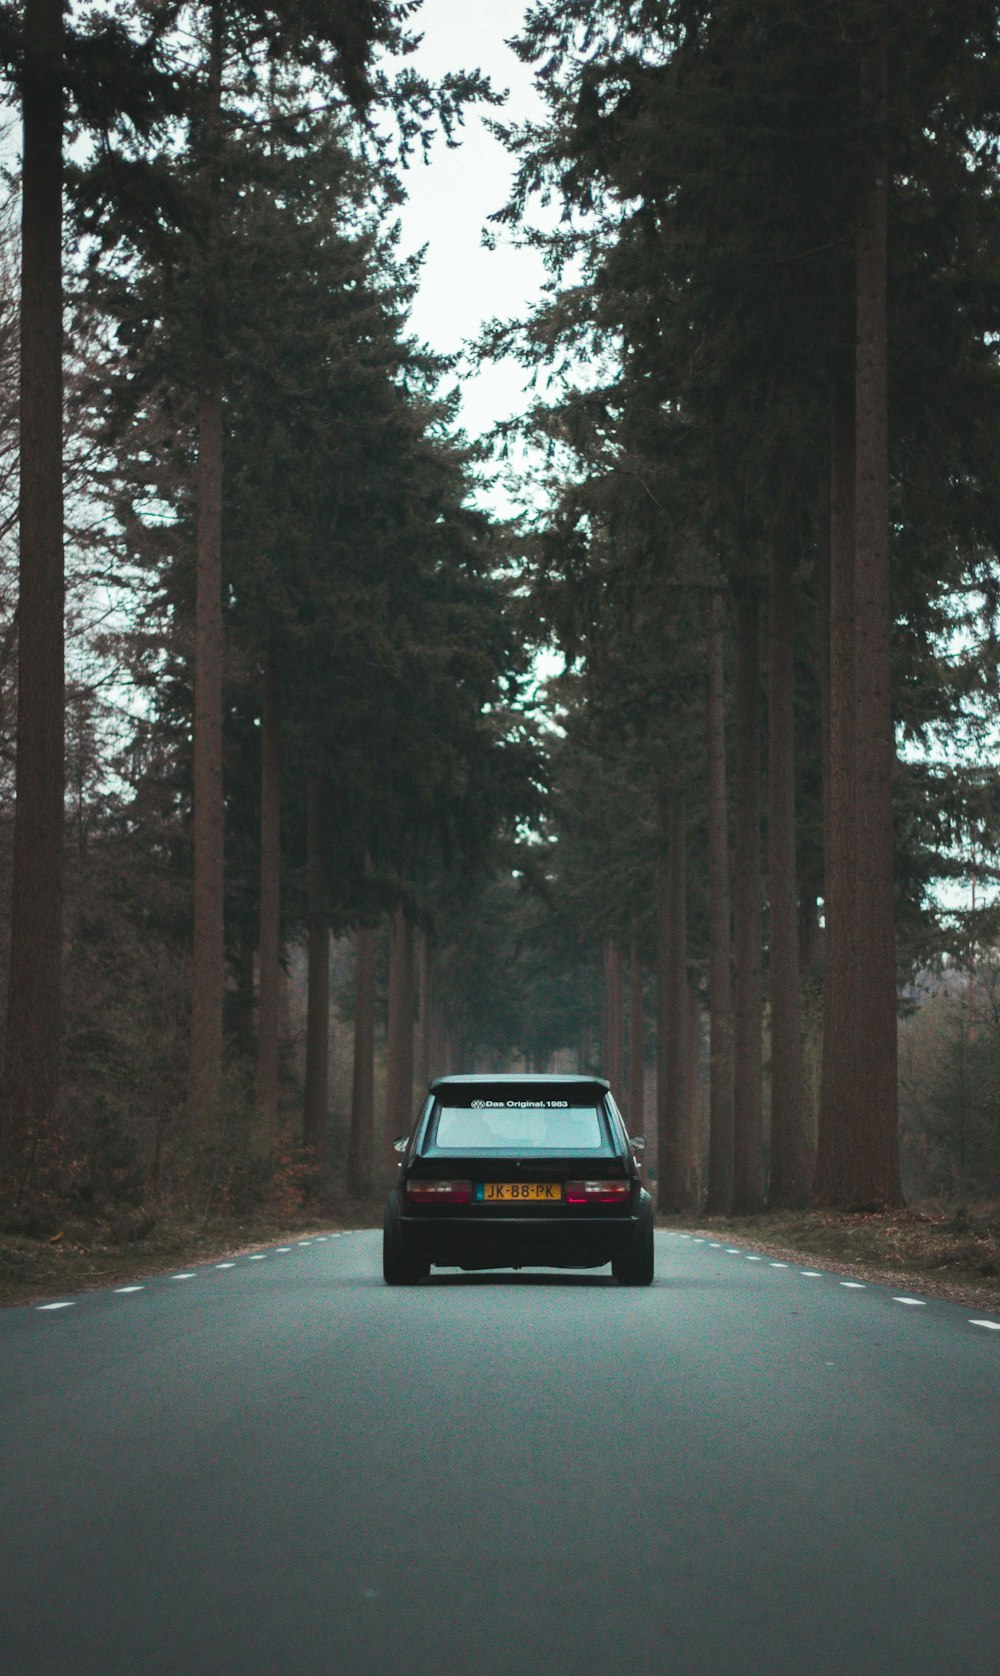 Hatchback negro de 5 puertas conduciendo en medio de la carretera rodeado de árboles durante el día